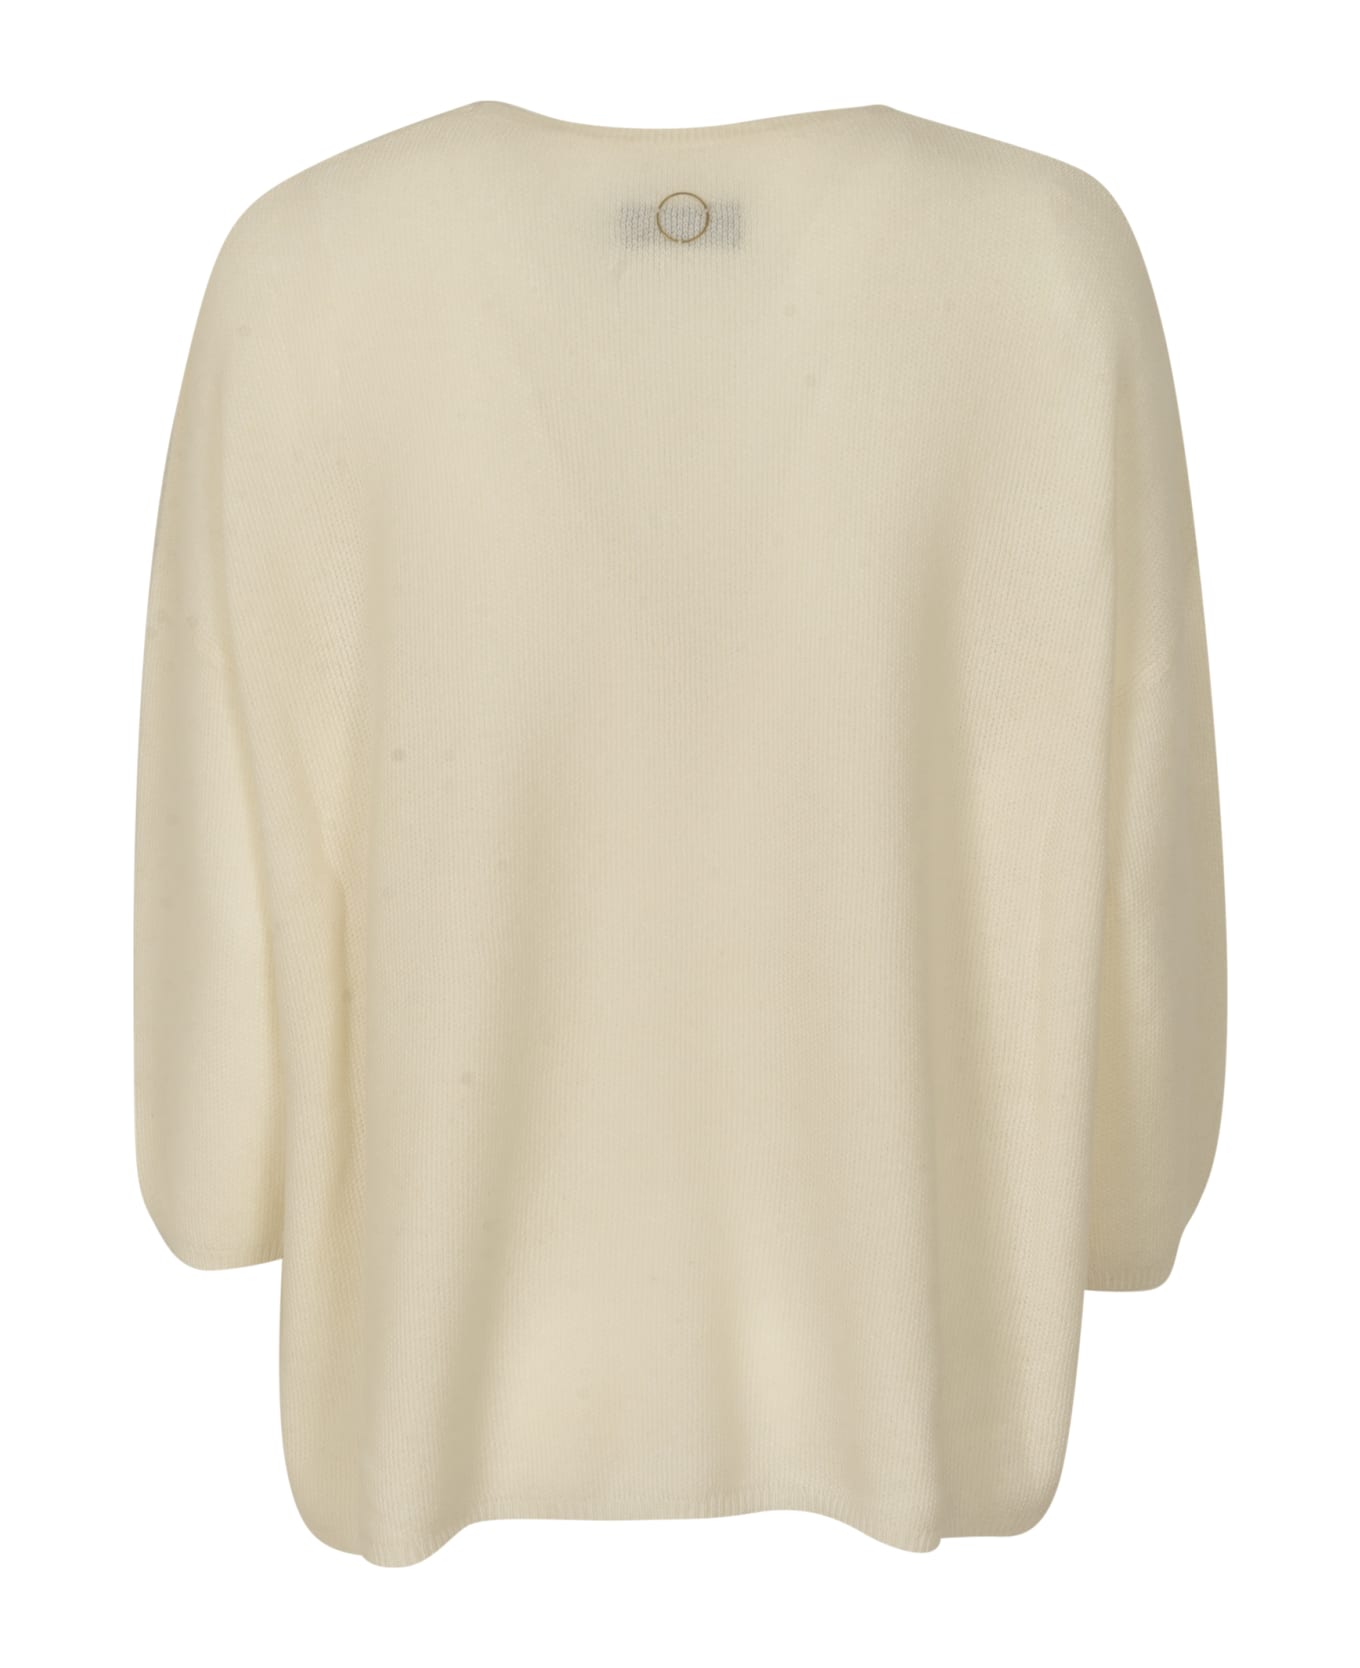 Oyuna Gabi Sweater - Ivory ニットウェア